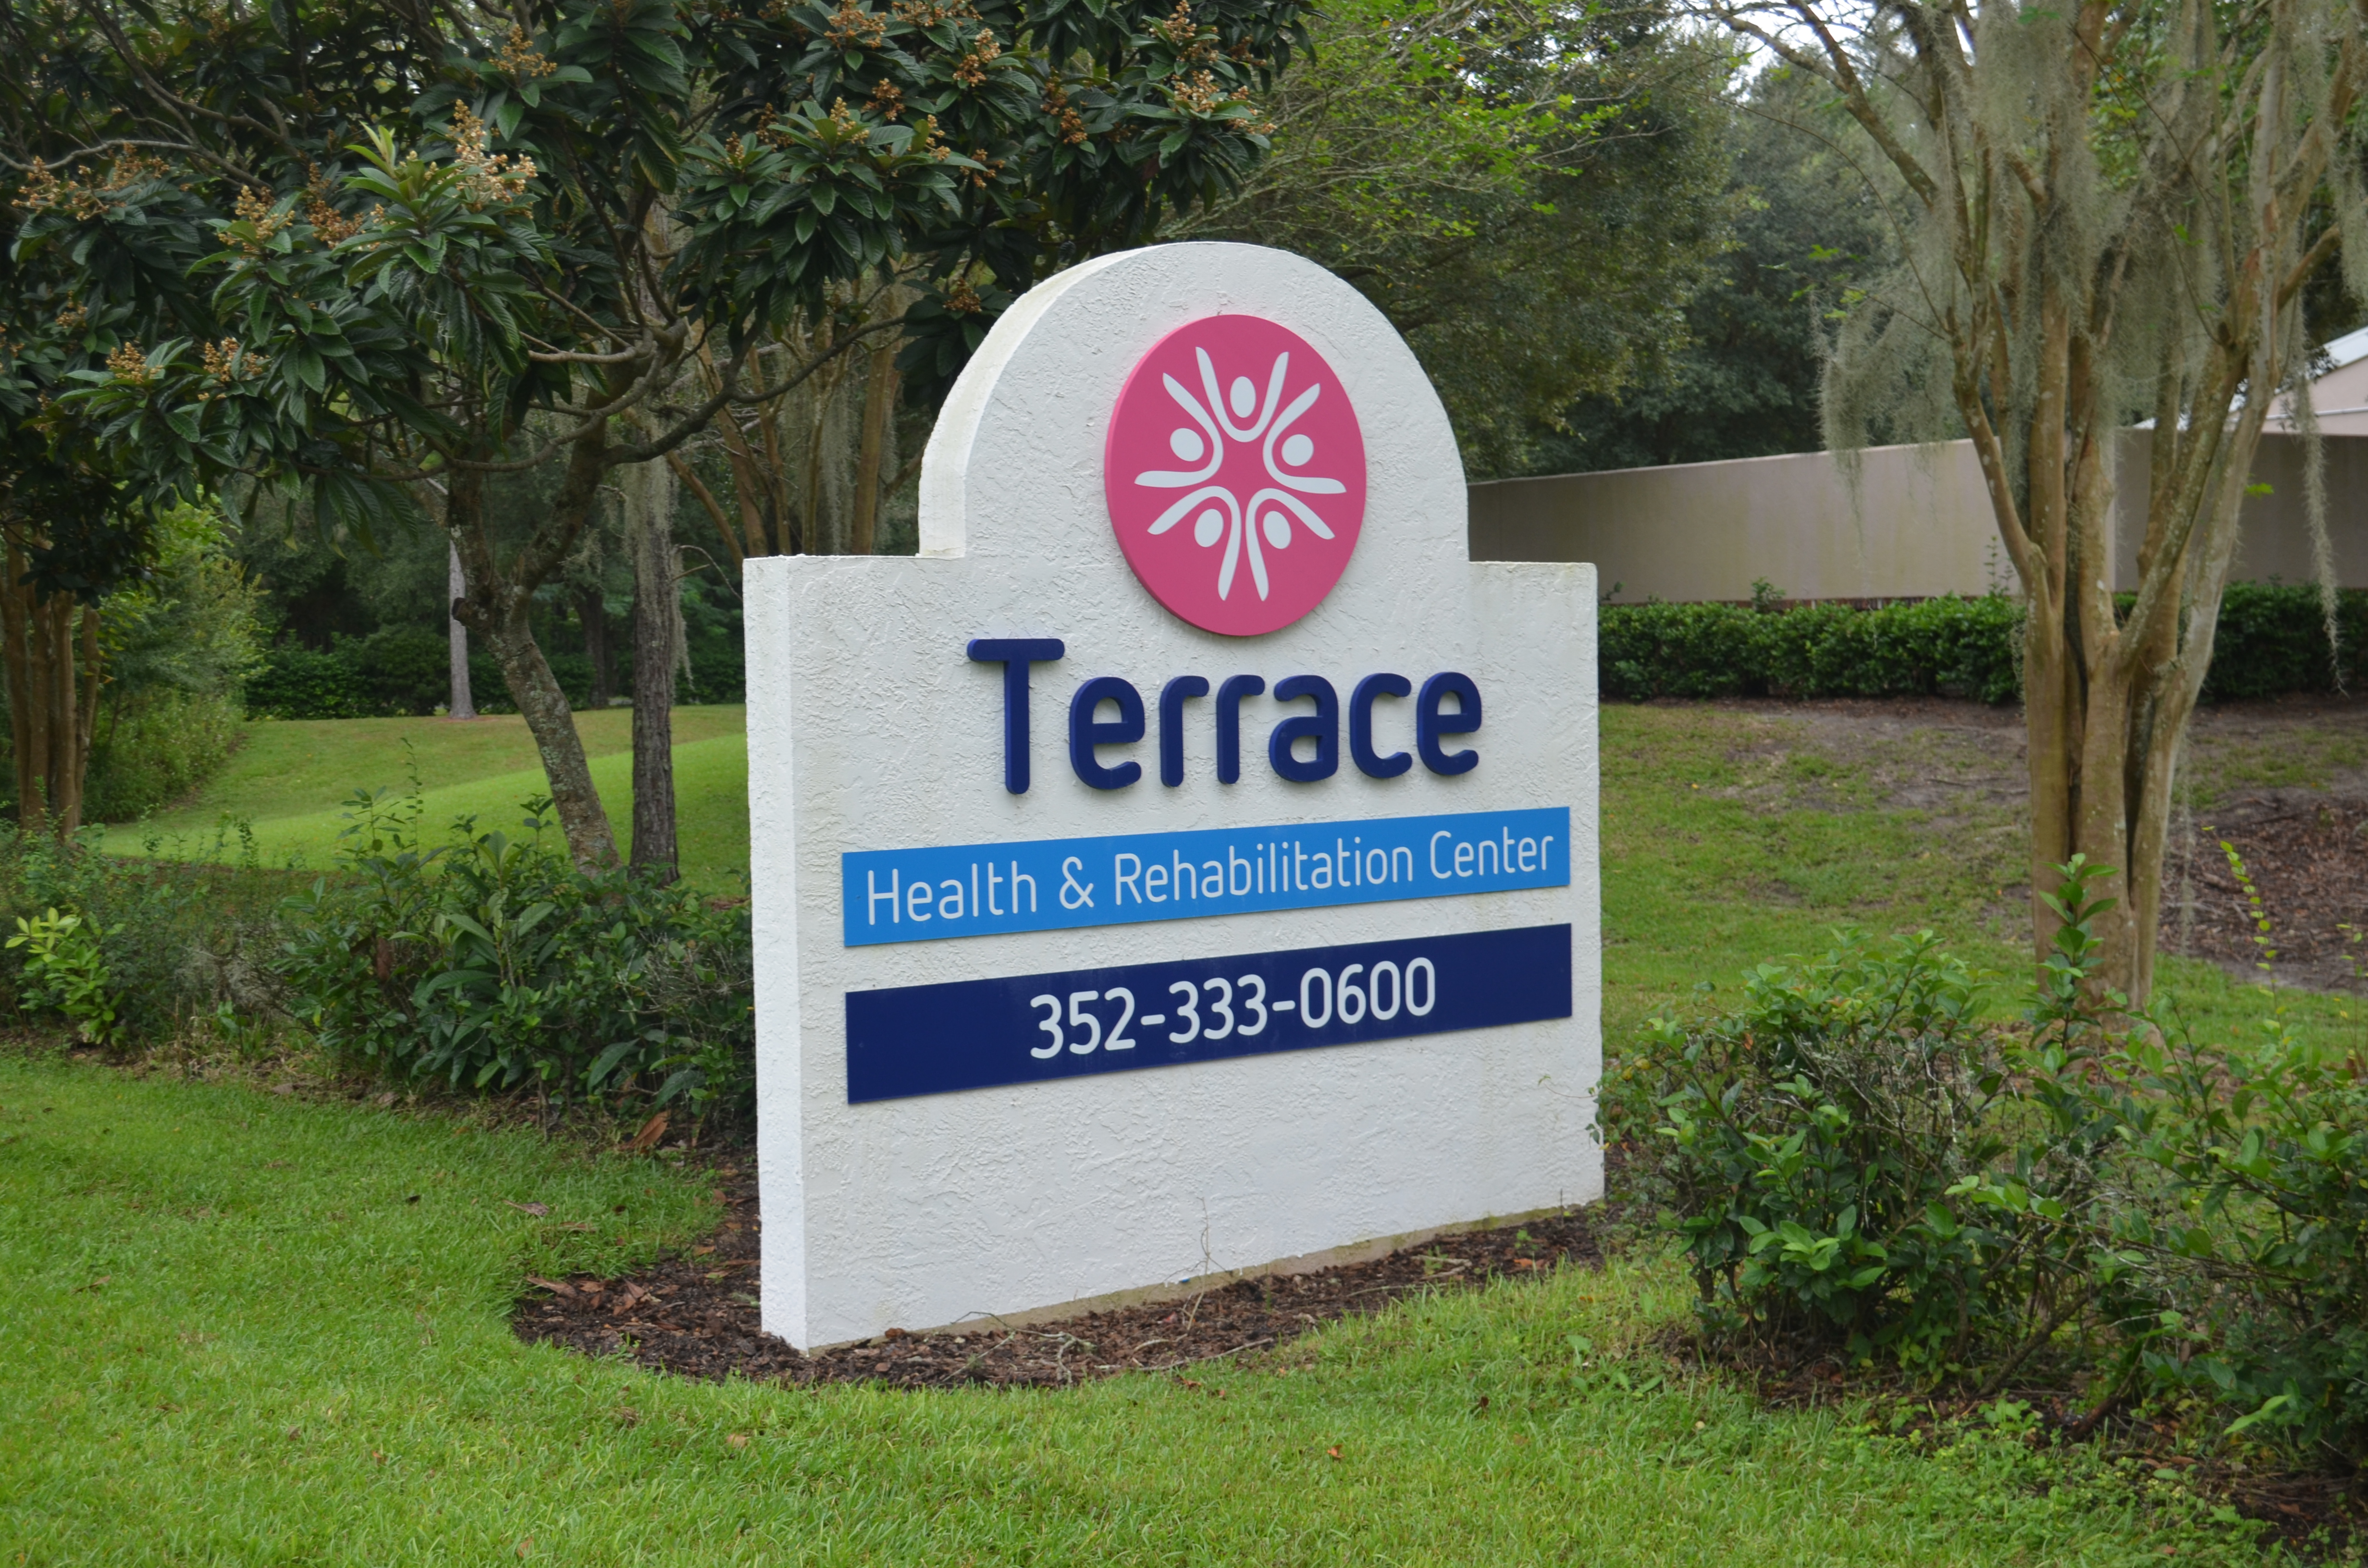 Terrace Health and Rehabilitation Center